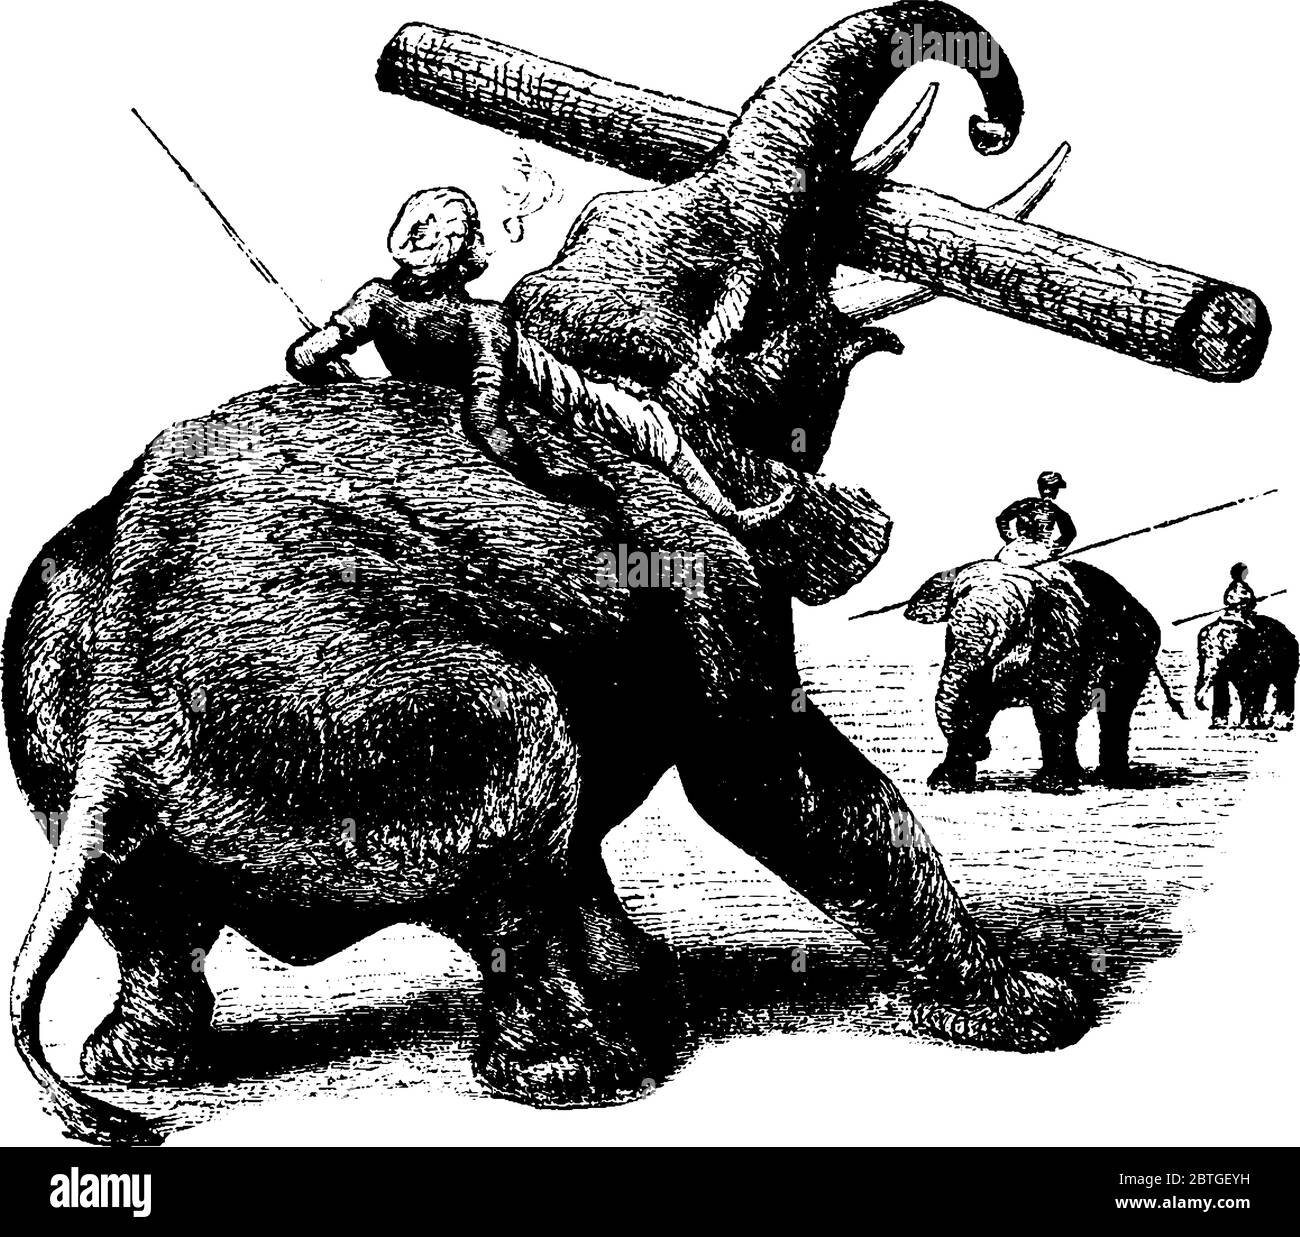 Ein Mahout reiten ein Elefant mit großen Ohren, Säule wie Beine, heben ein Log mit seinem langen Stamm, Vintage-Linie Zeichnung oder Gravur Illustration Stock Vektor